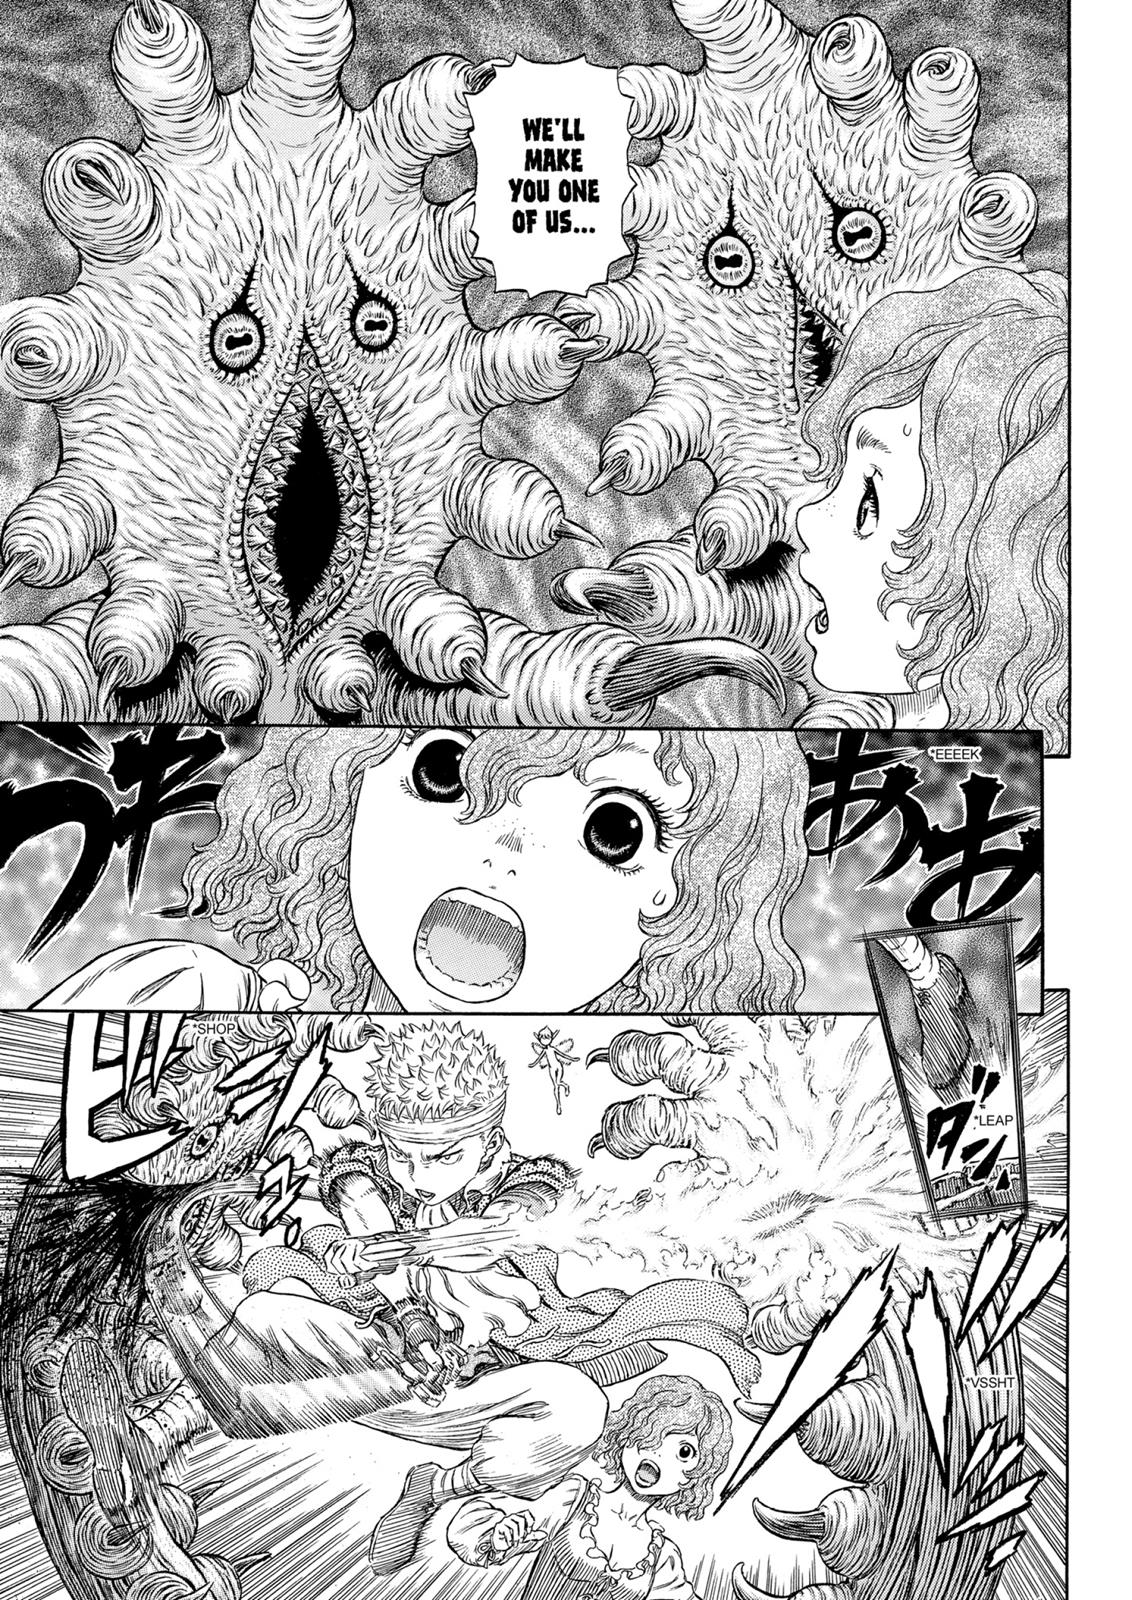 Berserk Manga Chapter 316 image 15